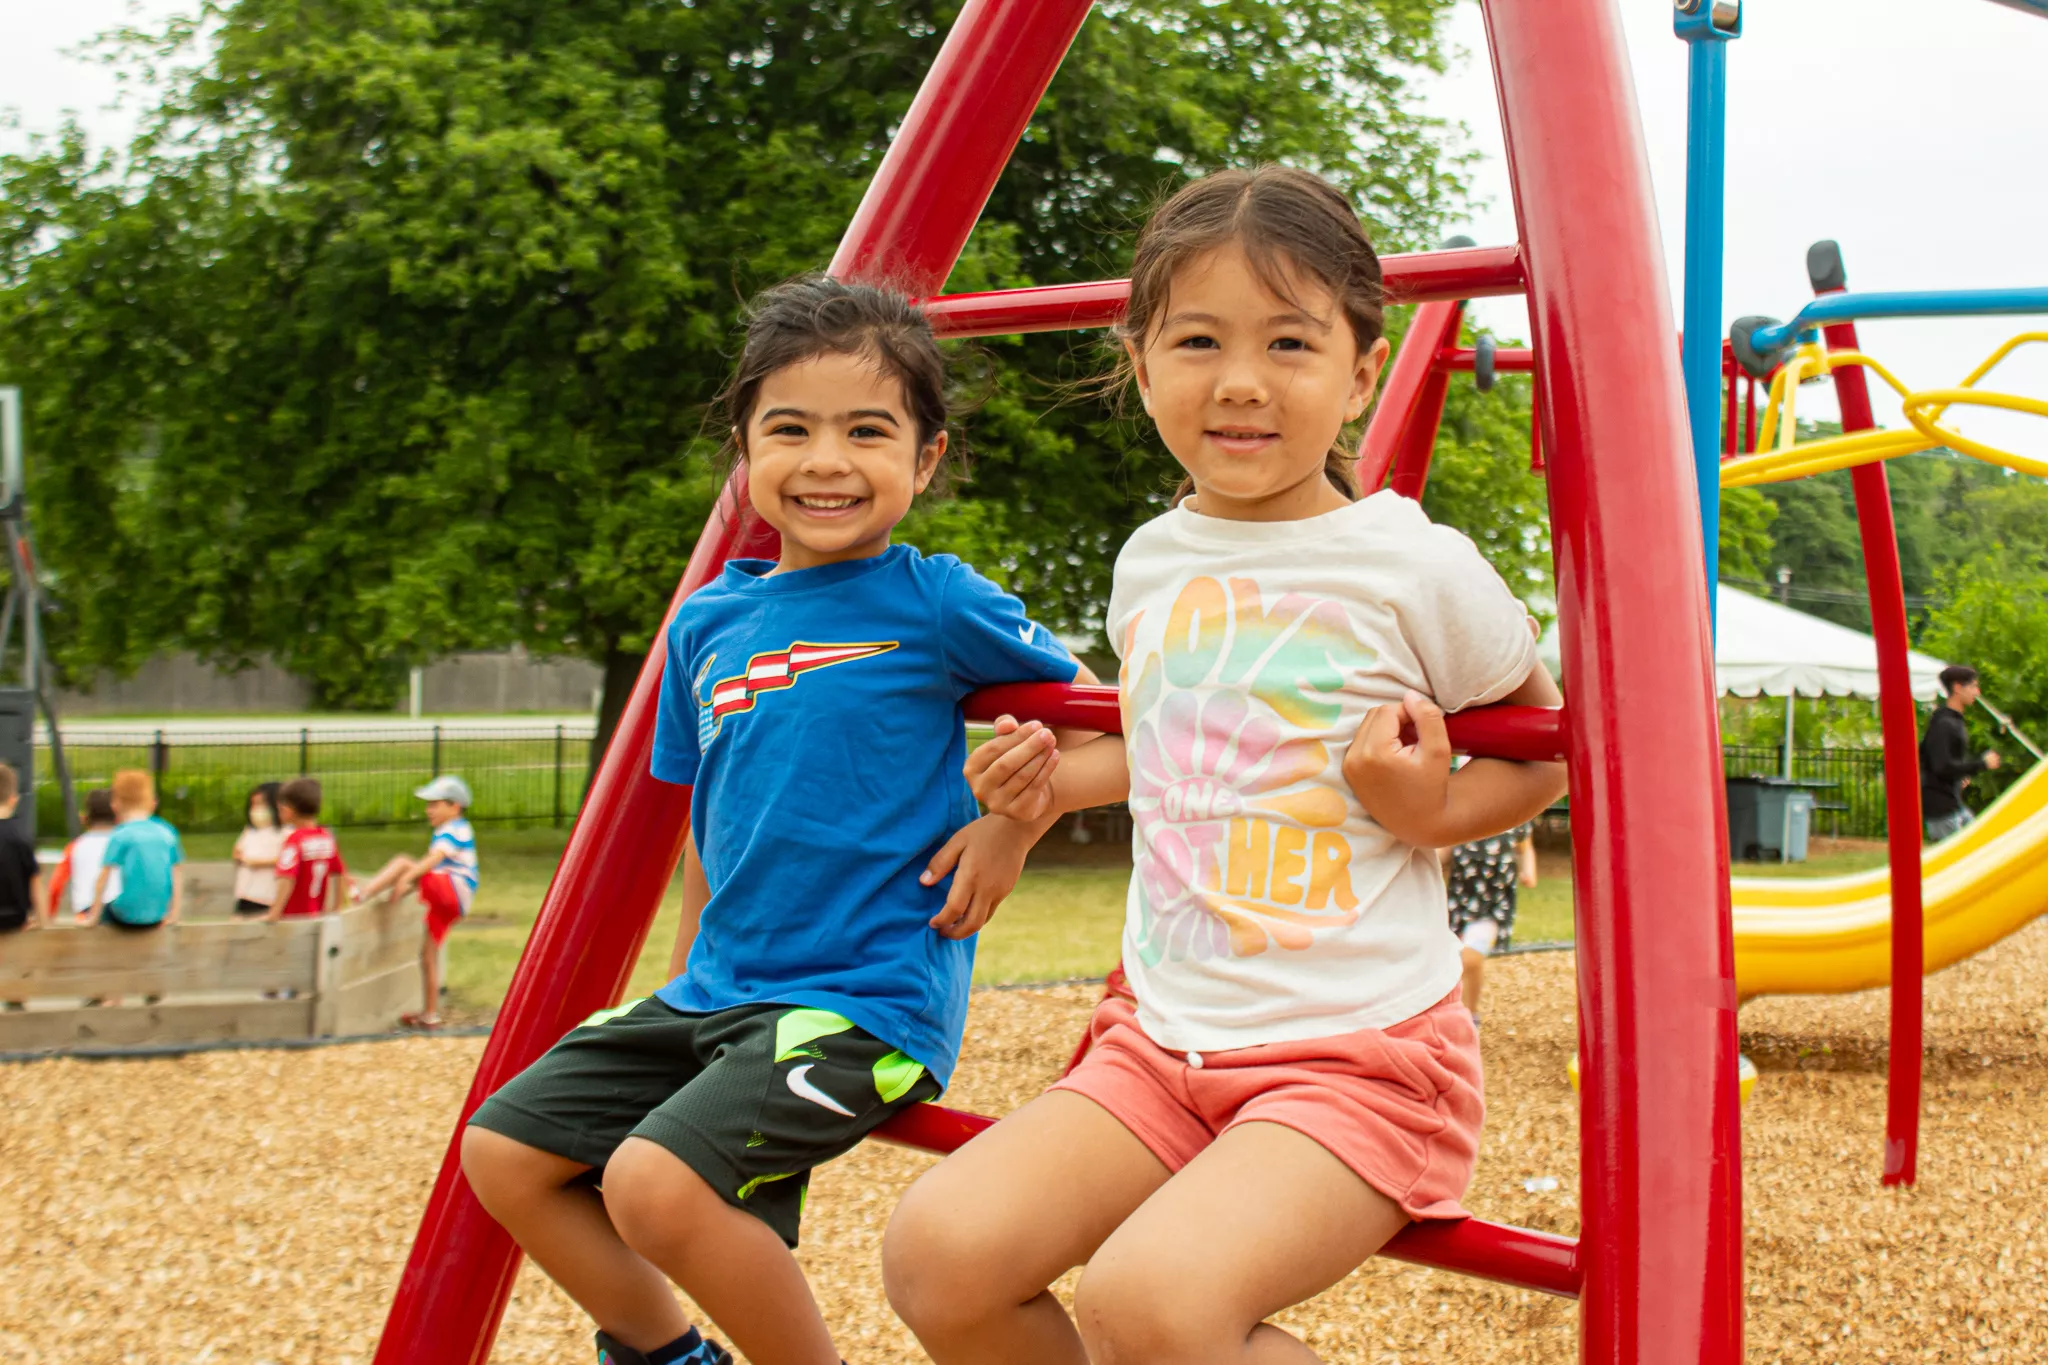 Children at a playground